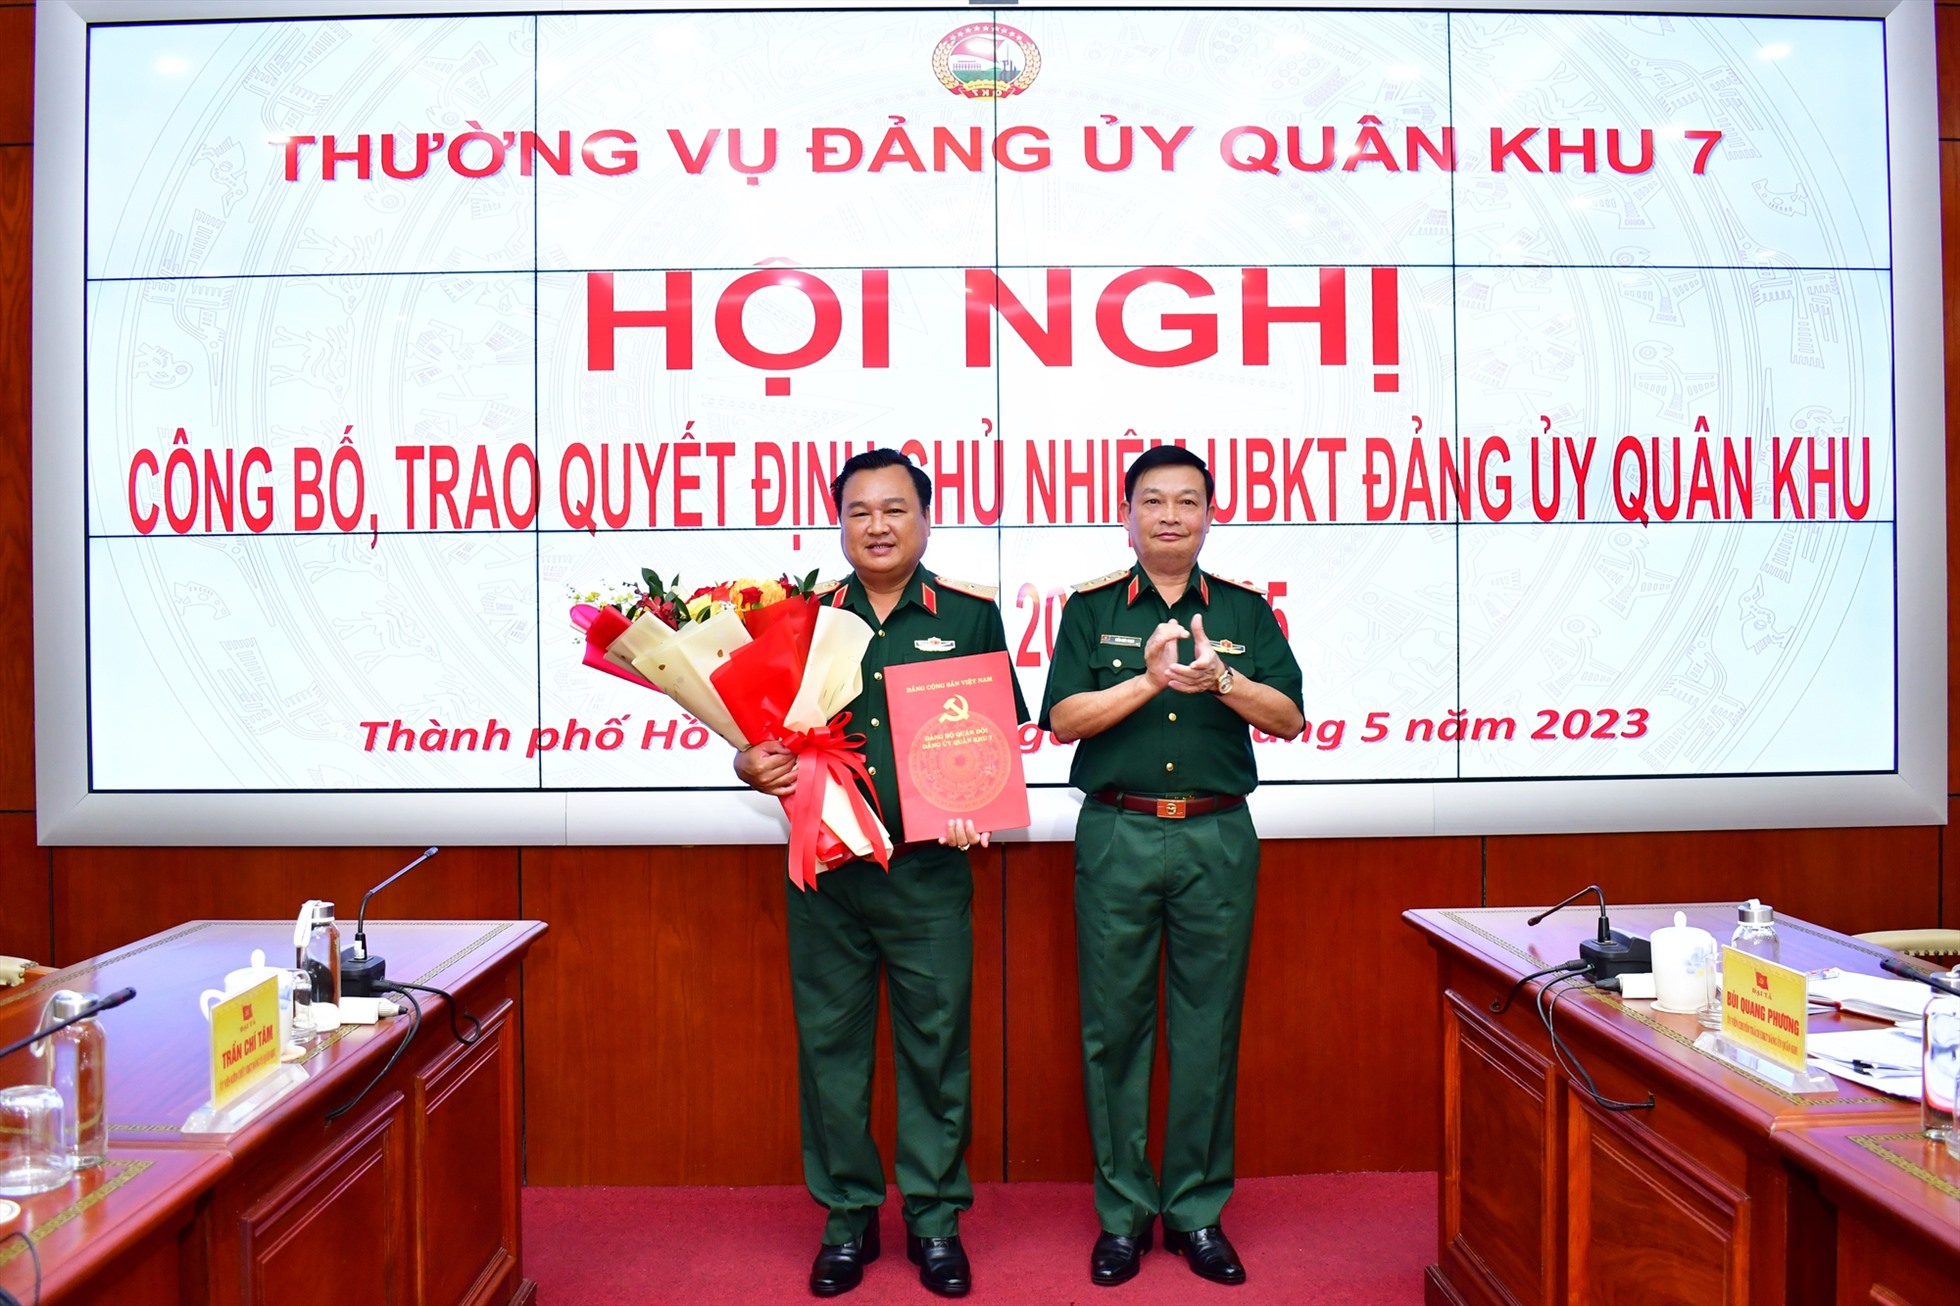 Thiếu tướng Trần Vinh Ngọc giữ chức vụ Chủ nhiệm Ủy ban Kiểm tra Đảng ủy Quân khu 7, nhiệm kỳ 2020-2025. Ảnh: VGP